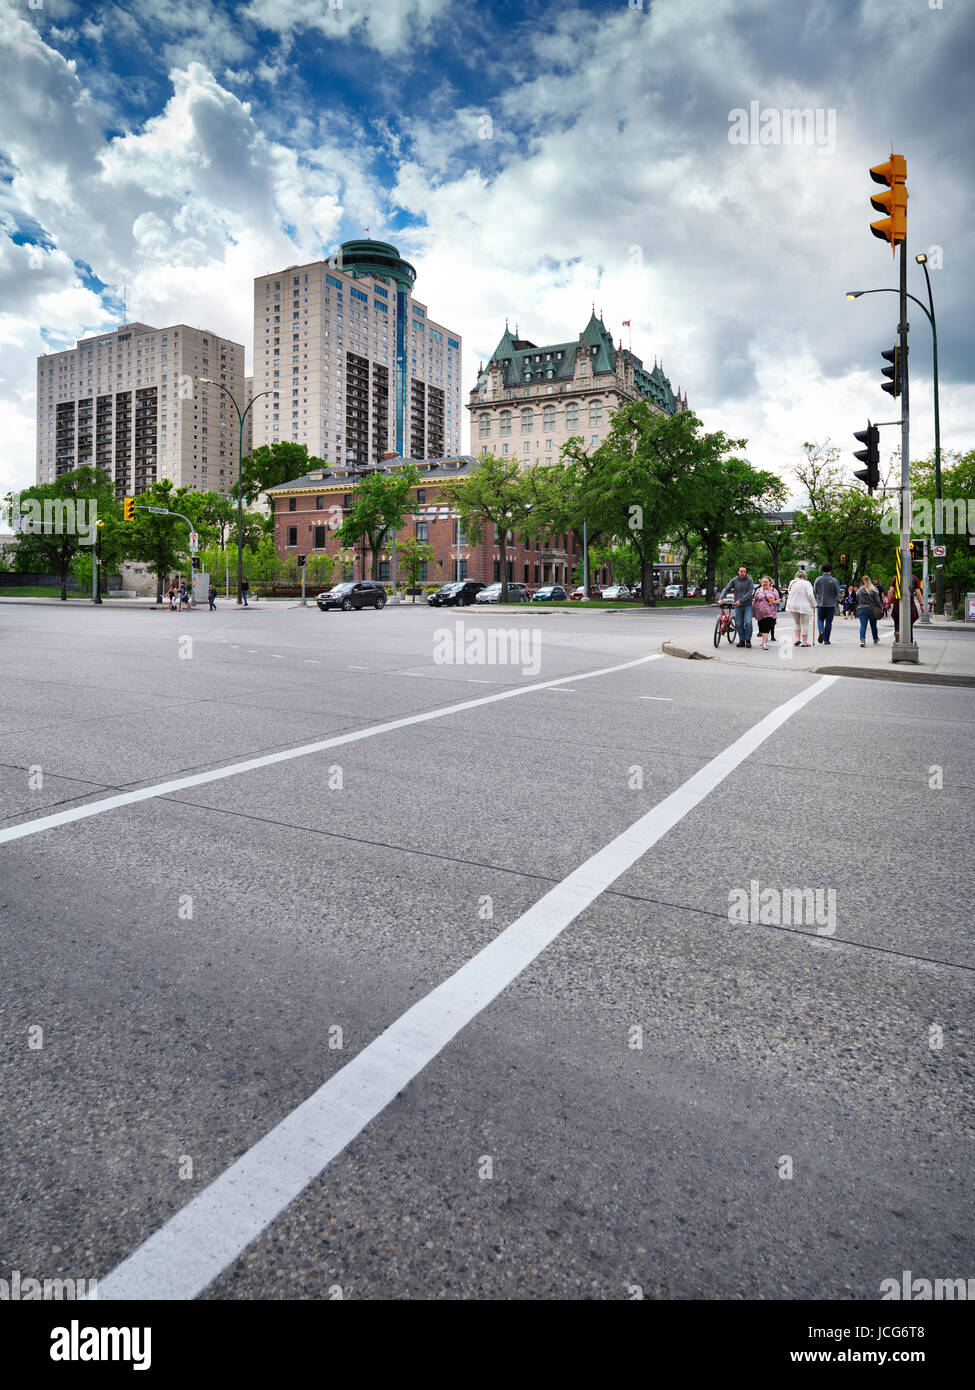 Le centre-ville de Winnipeg décors Main Street et Broadway intersection. Winnipeg, Manitoba, Canada 2017. Banque D'Images